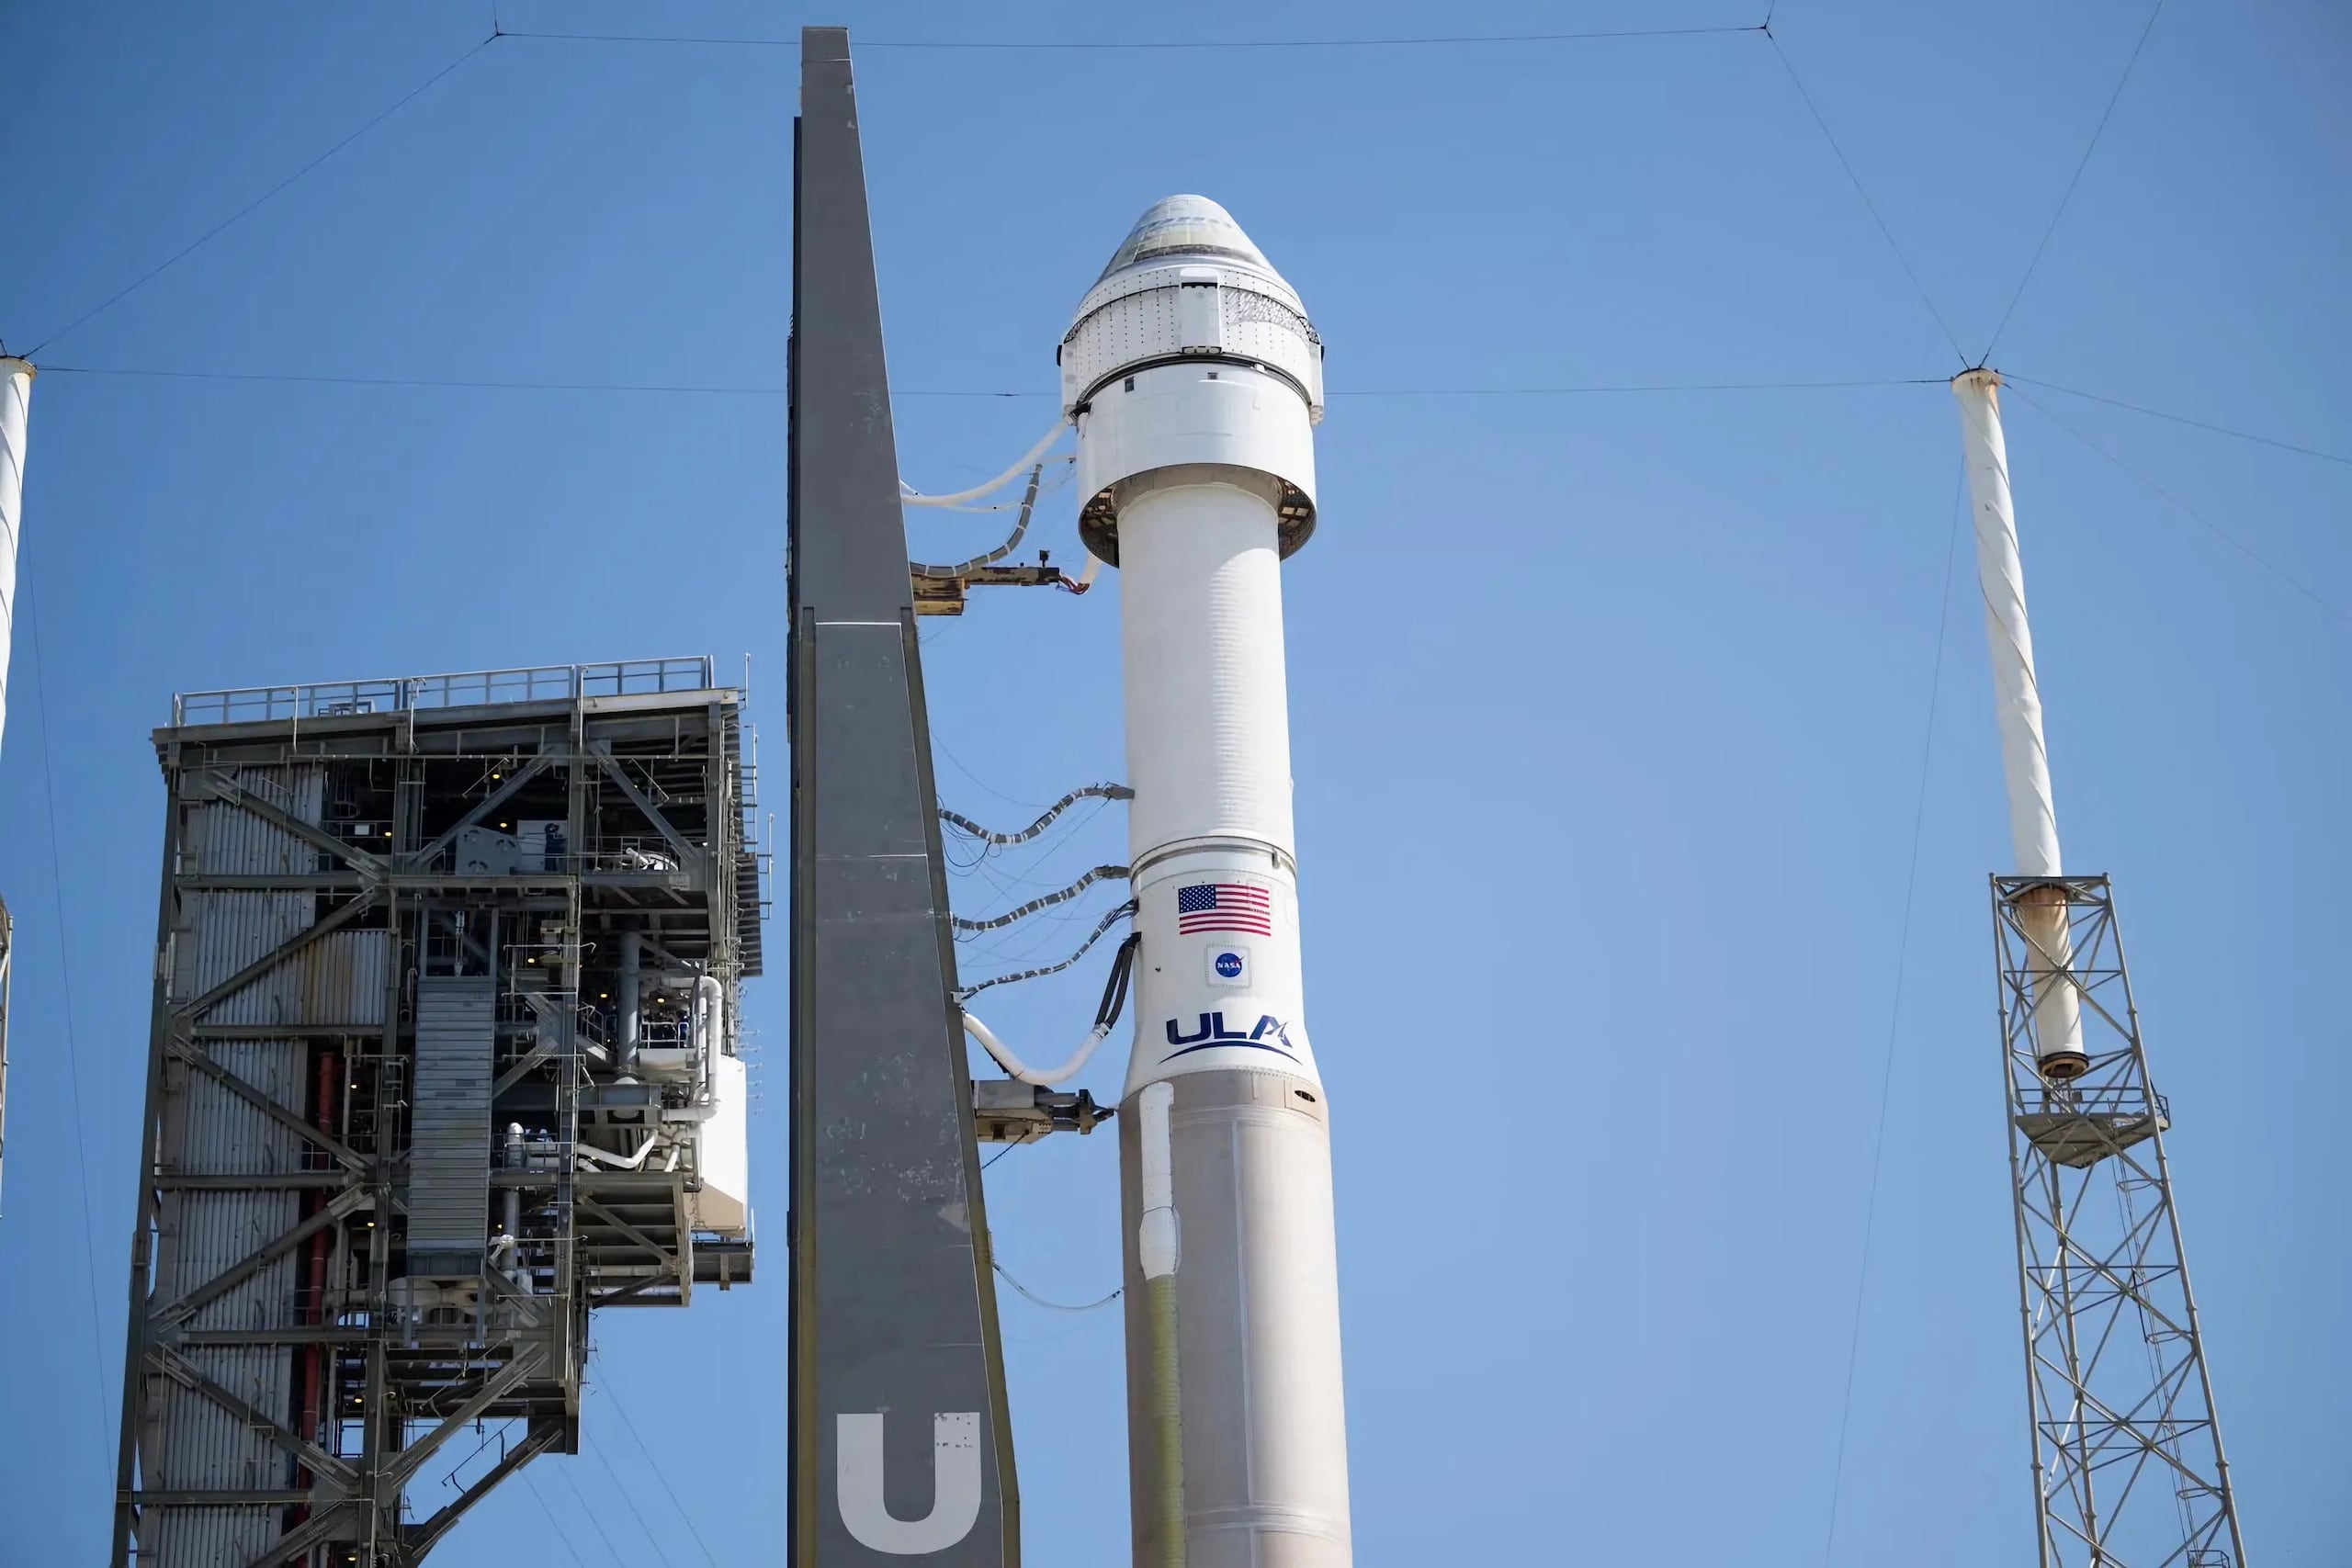 Fotografía cedida por la NASA donde se muestra el cohete Atlas V de United Launch Alliance con la nave espacial CST-100 Starliner de Boeing a bordo.